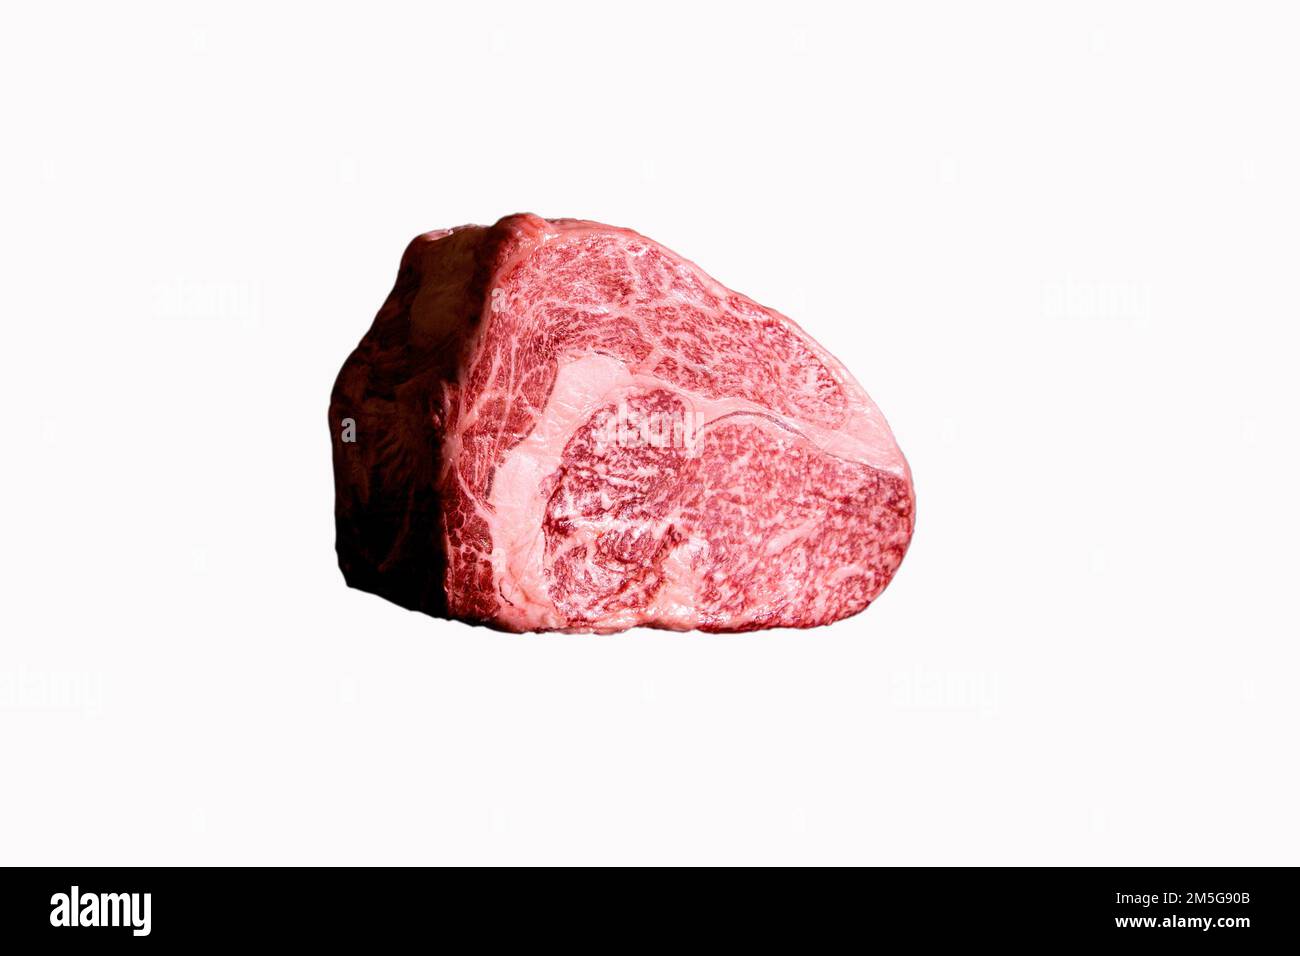 Steak Wagyu, bœuf japonais de qualité supérieure. Wagyu est le nom collectif des quatre principales races japonaises de bovins de boucherie. Banque D'Images